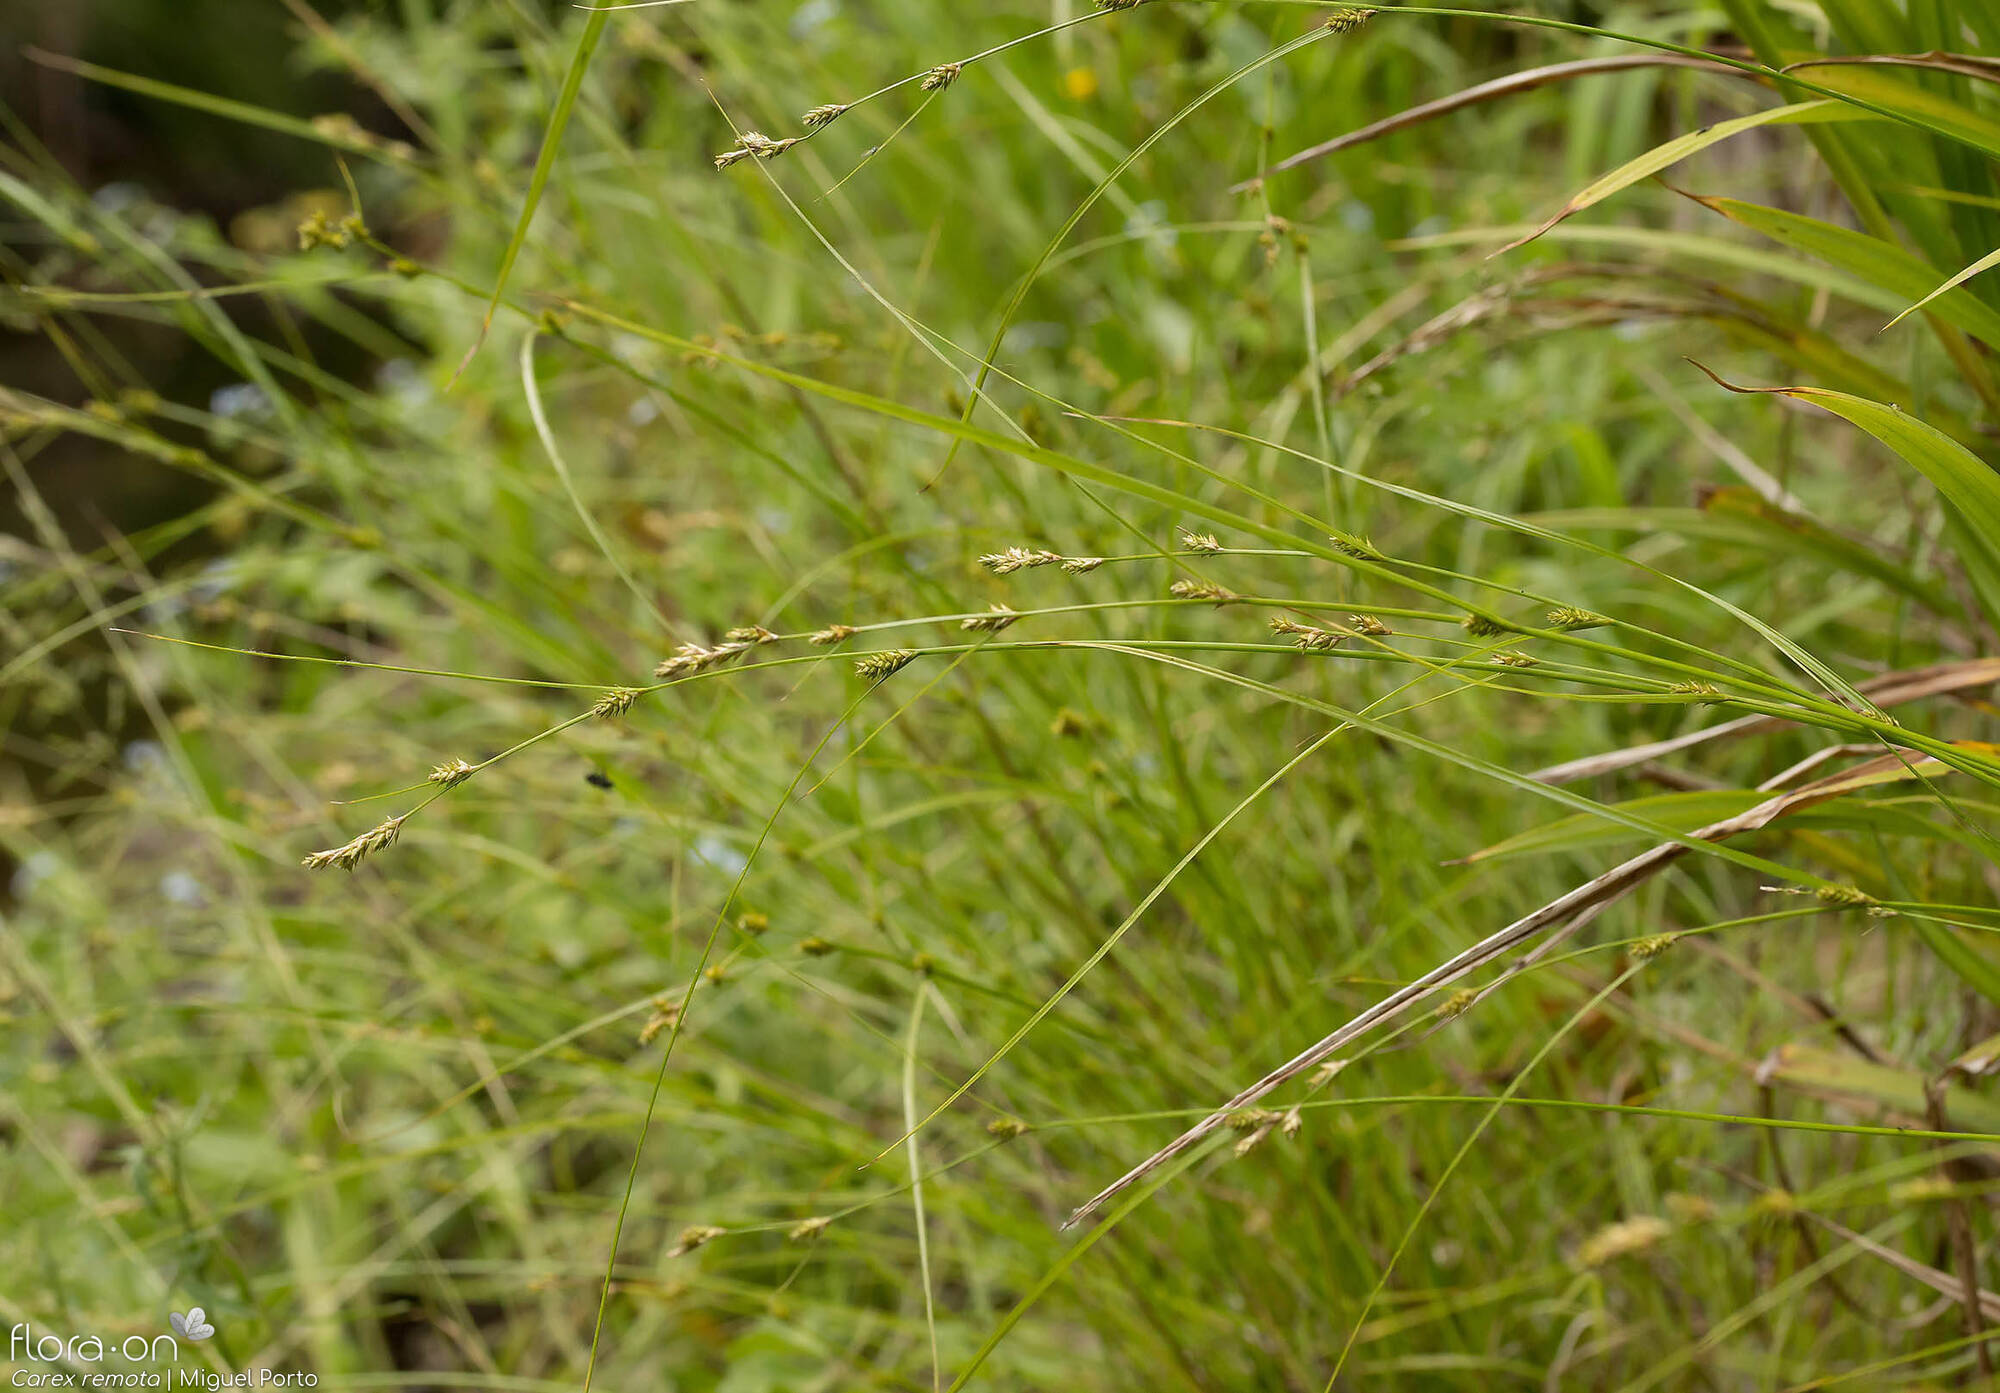 Carex remota - Hábito | Miguel Porto; CC BY-NC 4.0